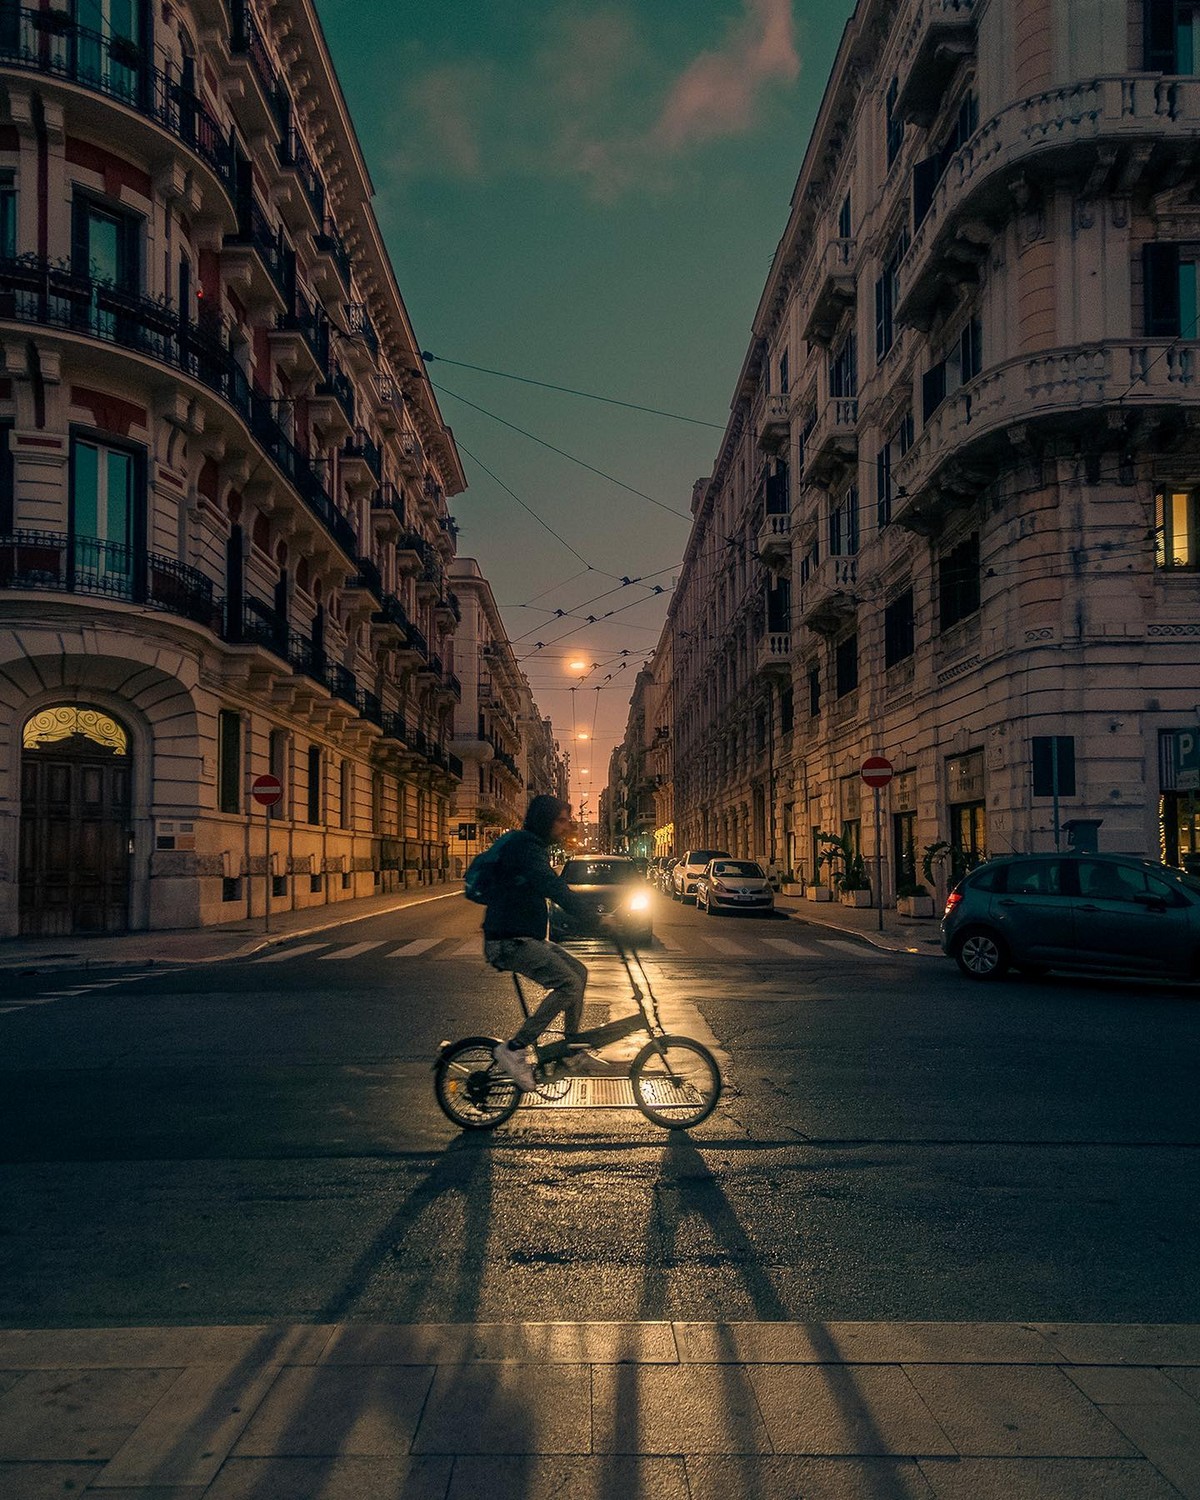 Увлекательные снимки жизни разных городов от уличных фотографов